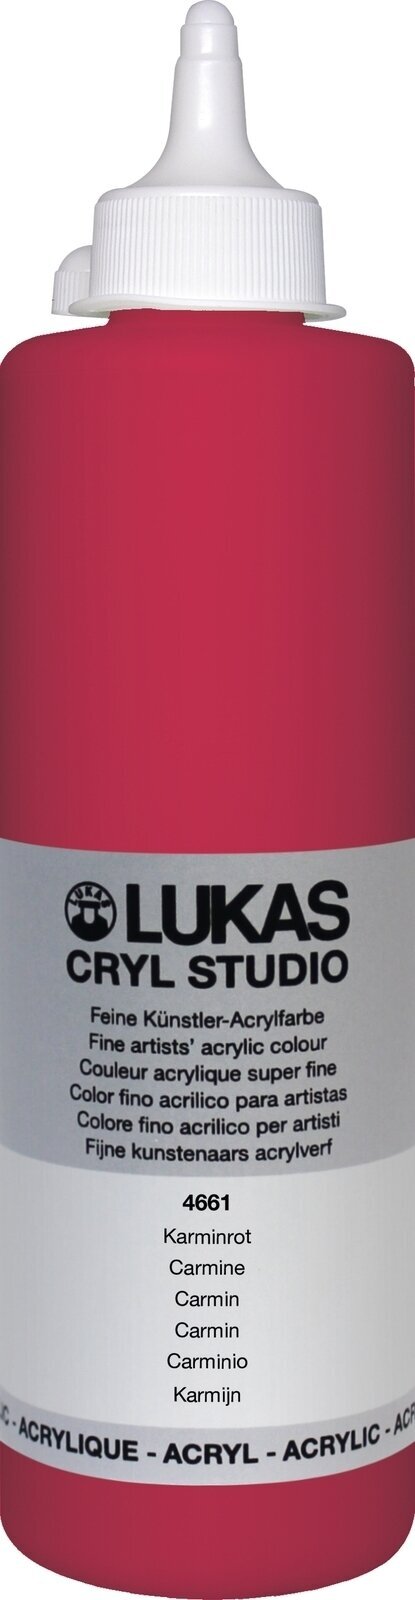 Peinture acrylique Lukas Cryl Studio Acrylic Paint Plastic Bottle Peinture acrylique Carmine 500 ml 1 pc